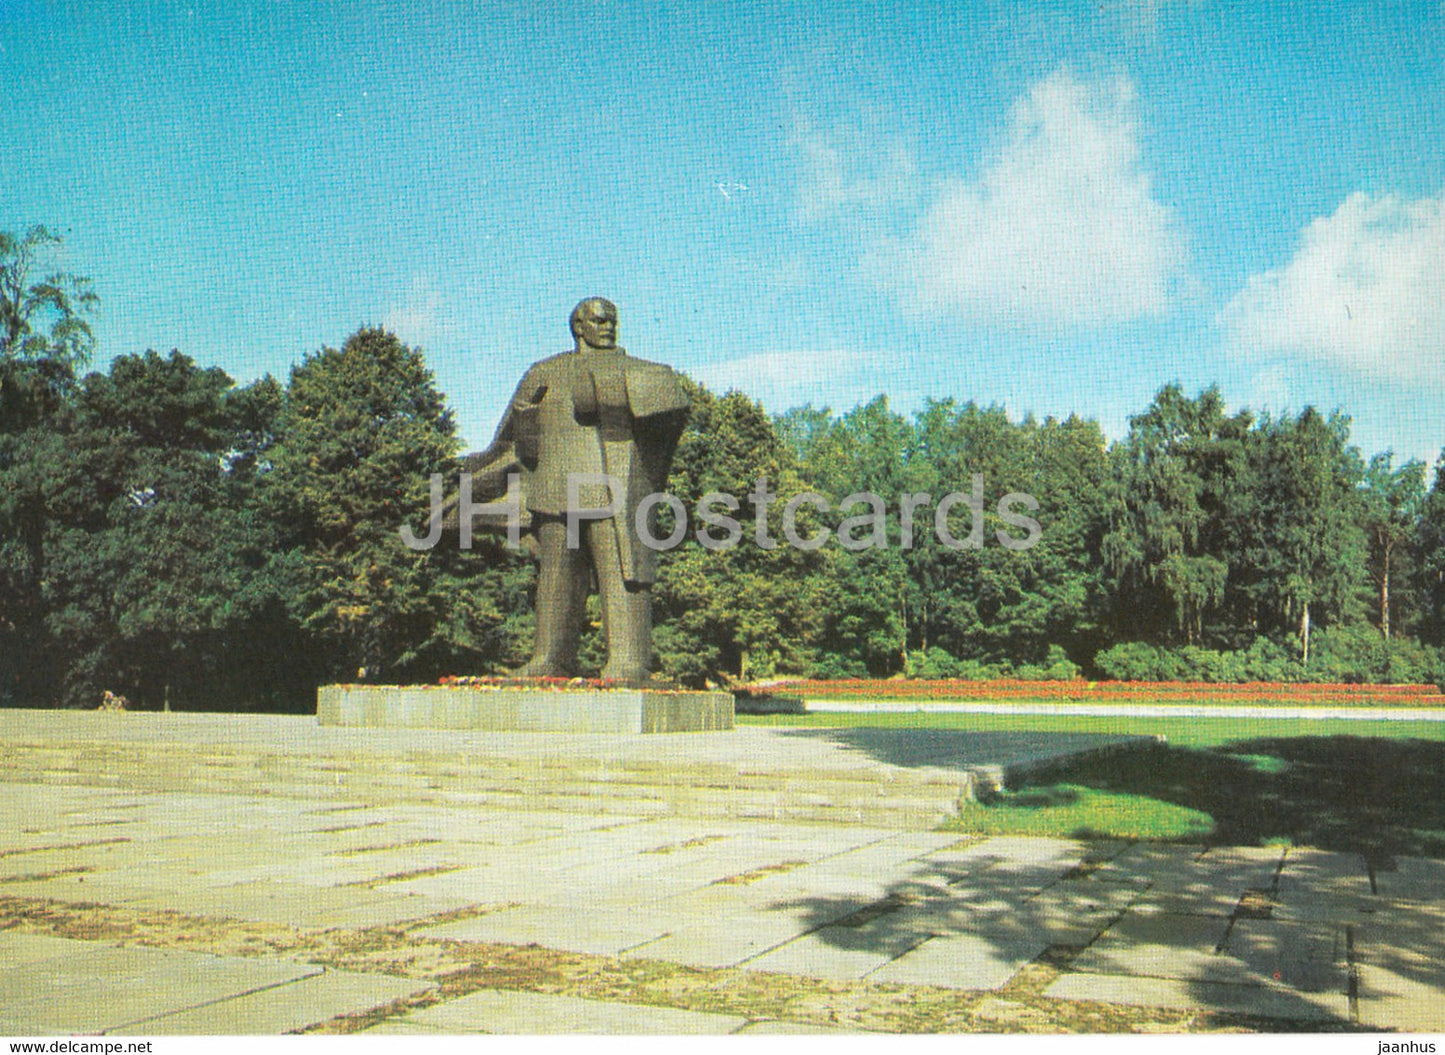 Jurmala - monument to Lenin at Dubulti - 1986 - Latvia USSR - unused - JH Postcards